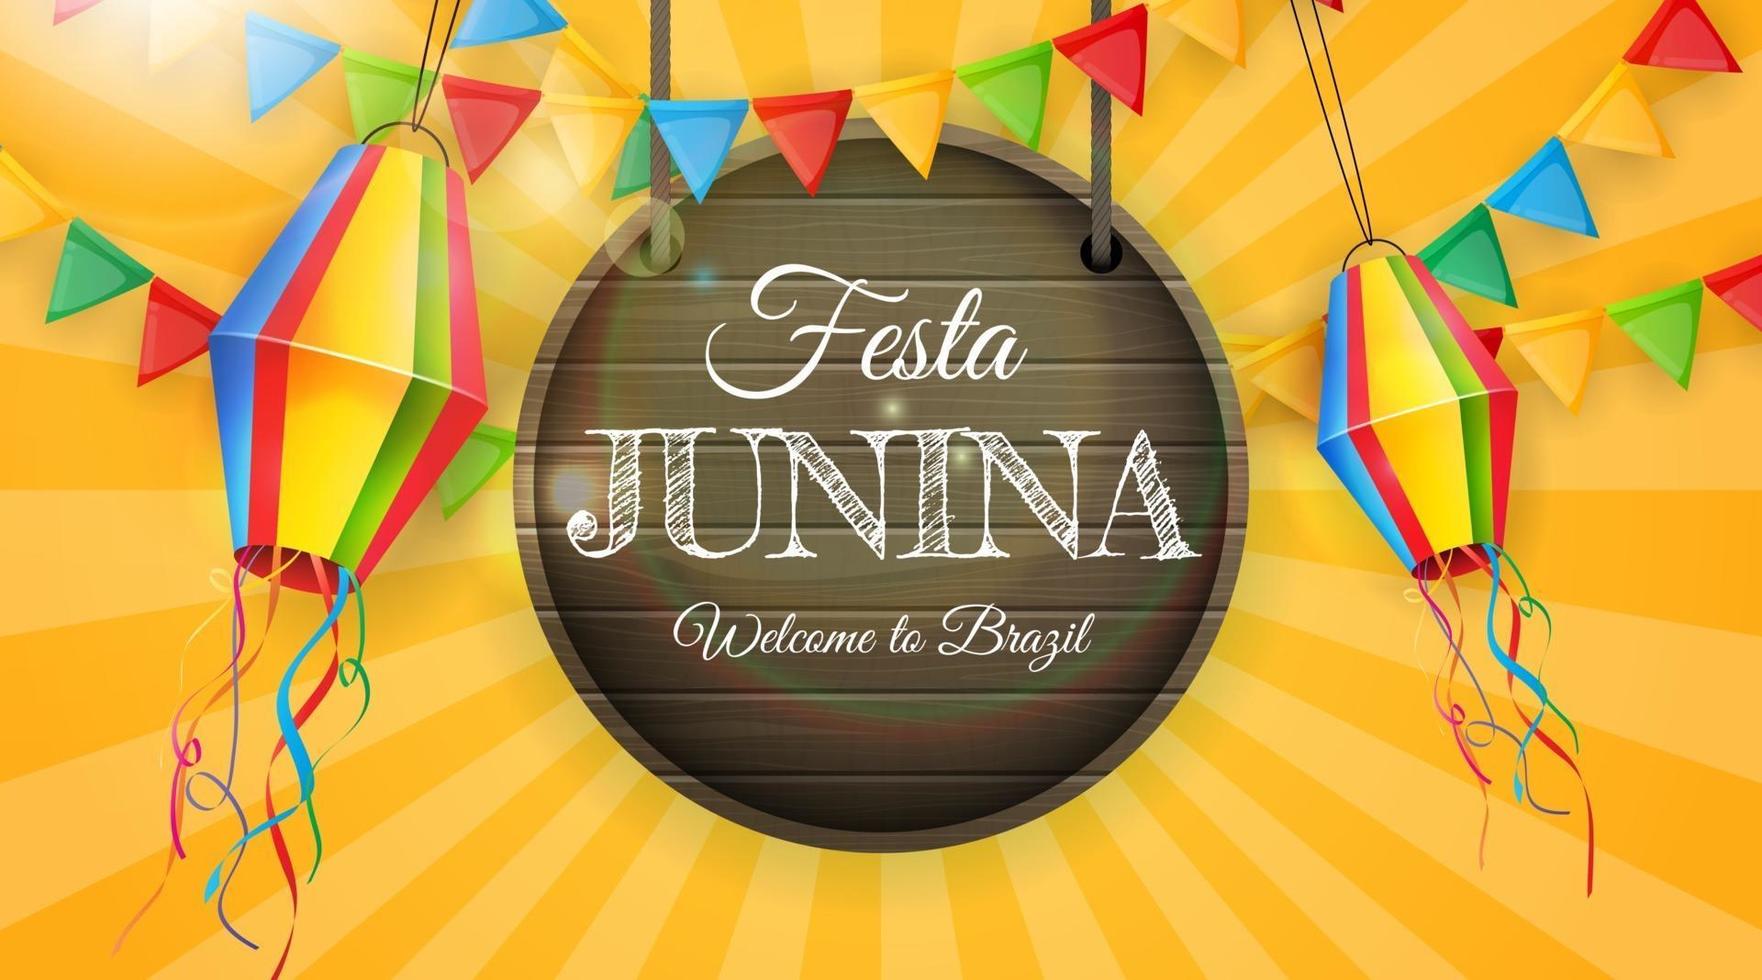 fond de festa junina avec des drapeaux de fête et des lanternes. fond de festival de juin au brésil pour carte de voeux vecteur